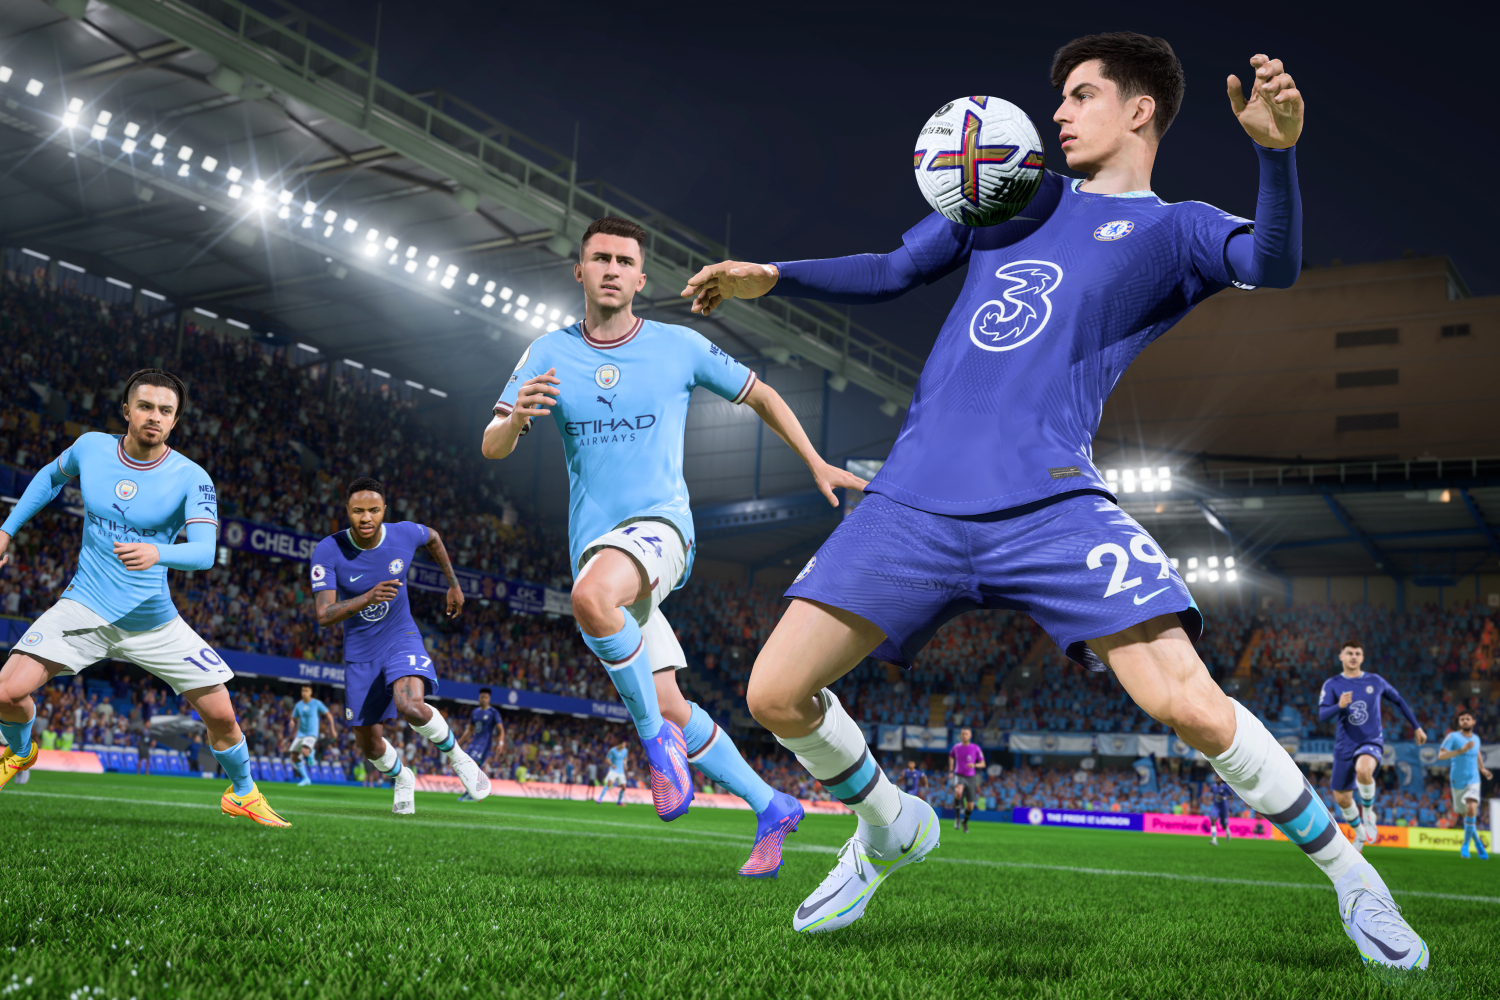 FIFA 23 Feedback & Reviews – FIFPlay